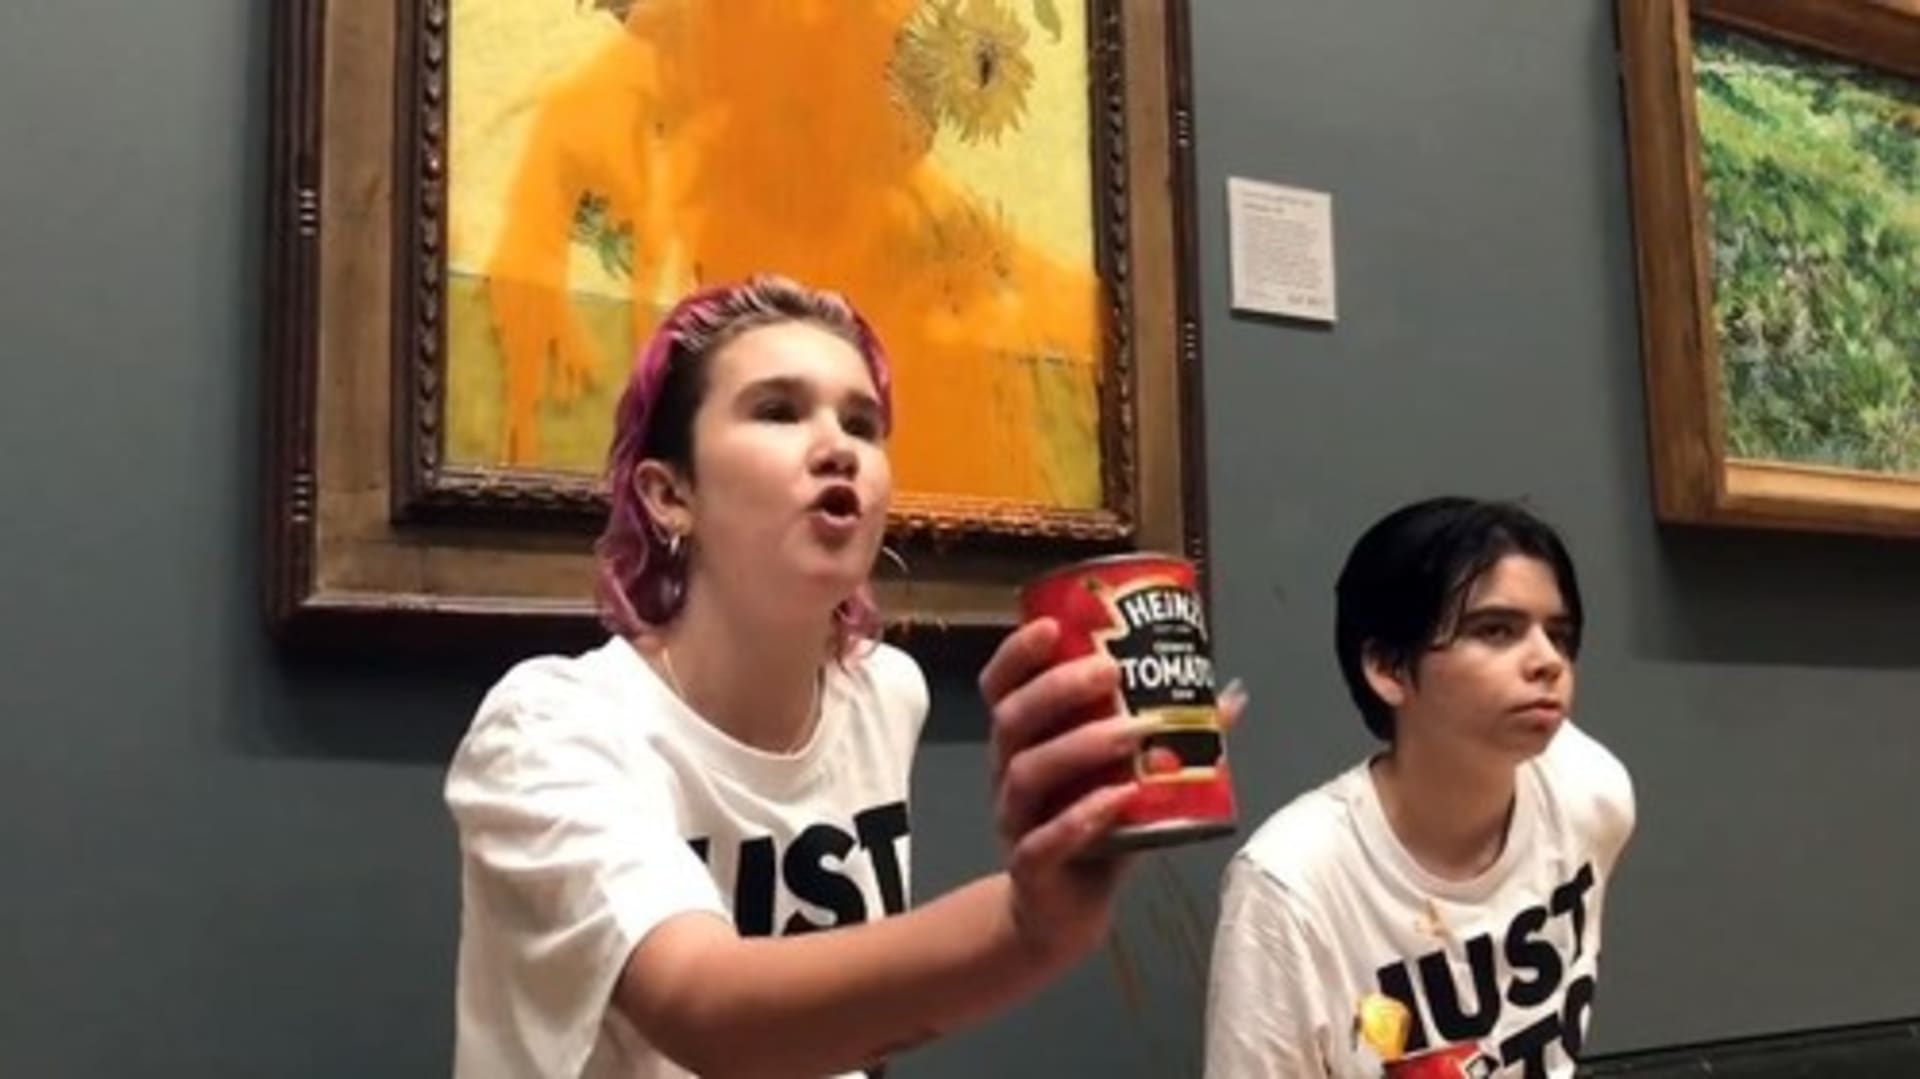 Aktivistky polily slavný obraz polévkou